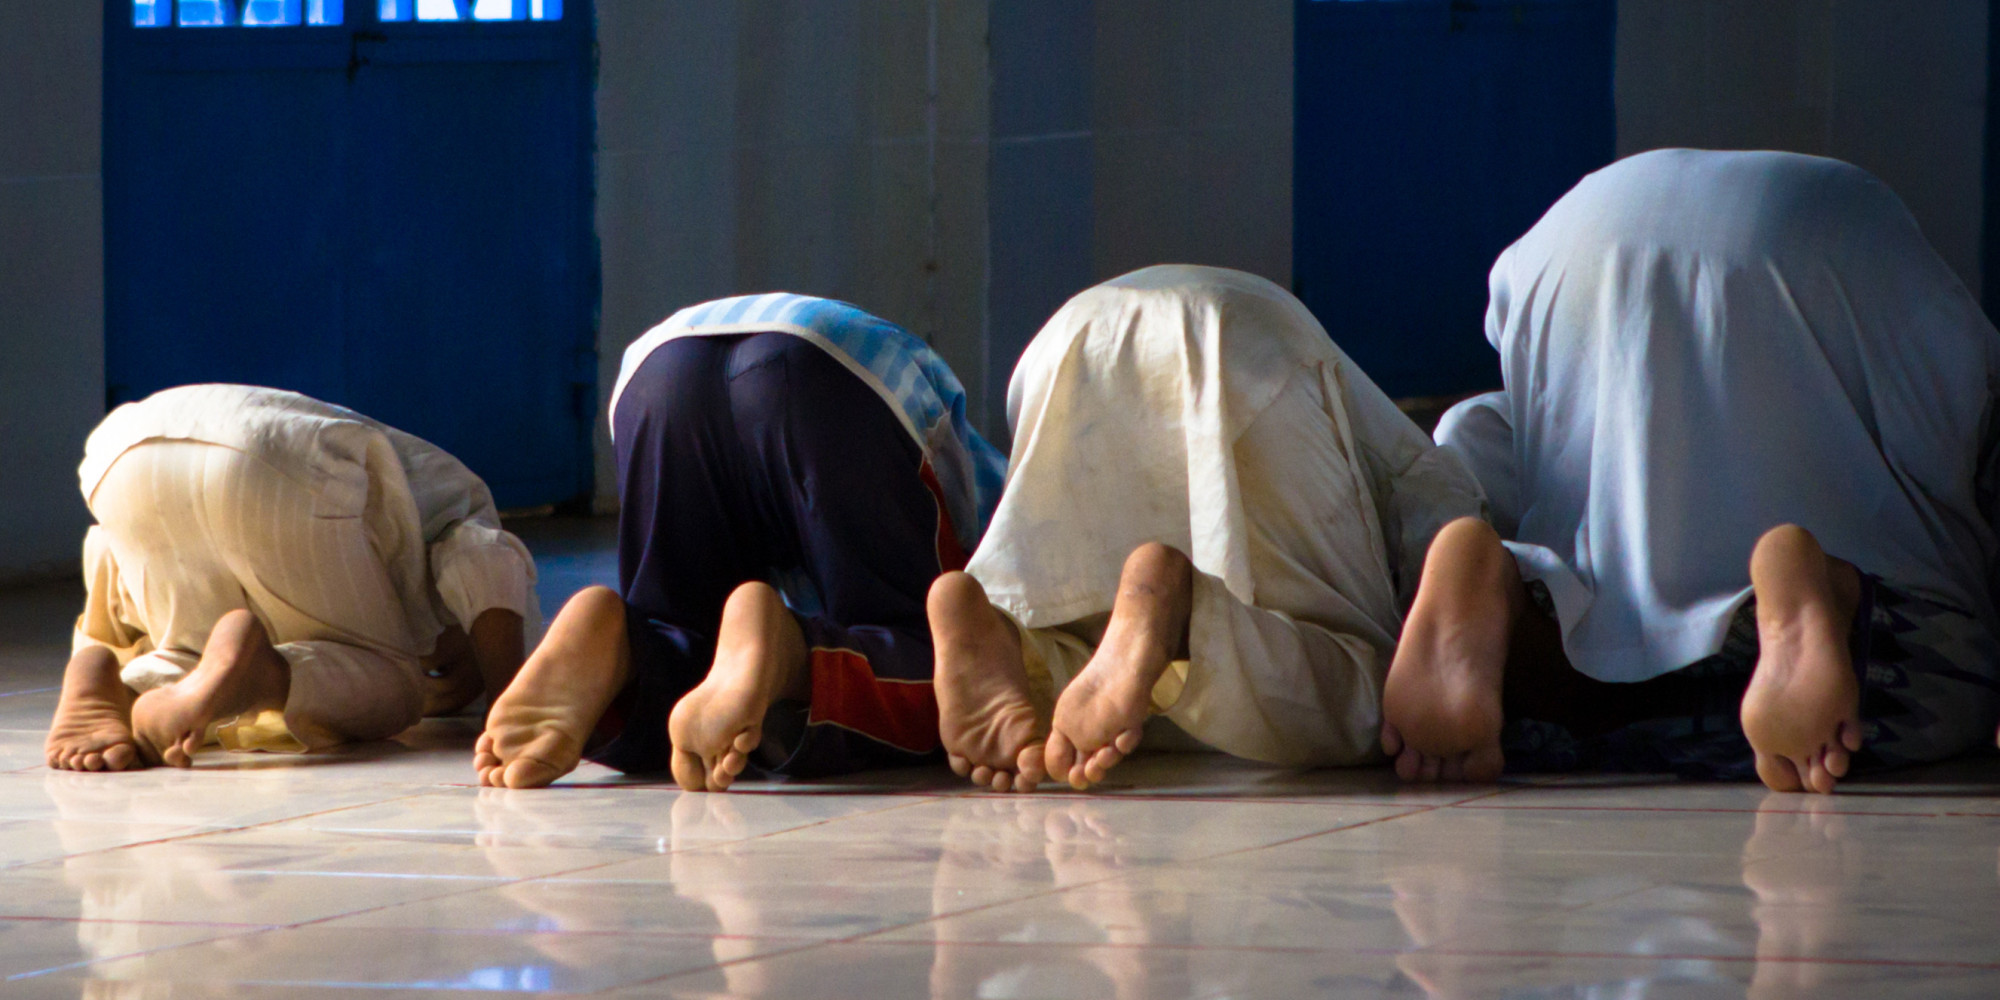 [Image: muslim-men-praying-in-sujood.jpg]